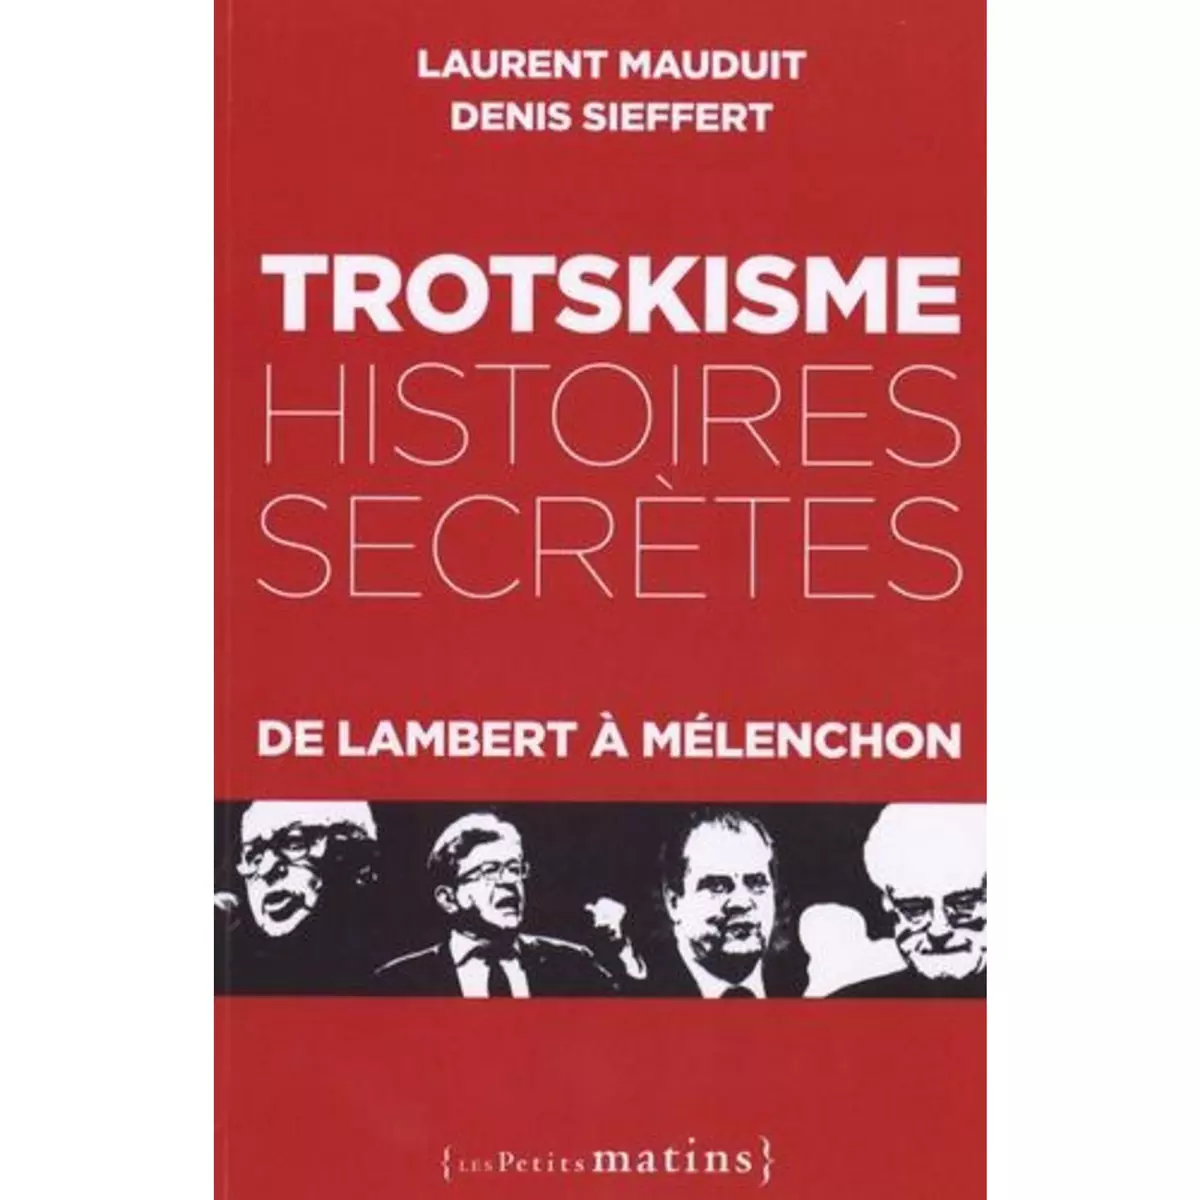  TROTSKISME, HISTOIRES SECRETES. DE LAMBERT A MELENCHON, Mauduit Laurent